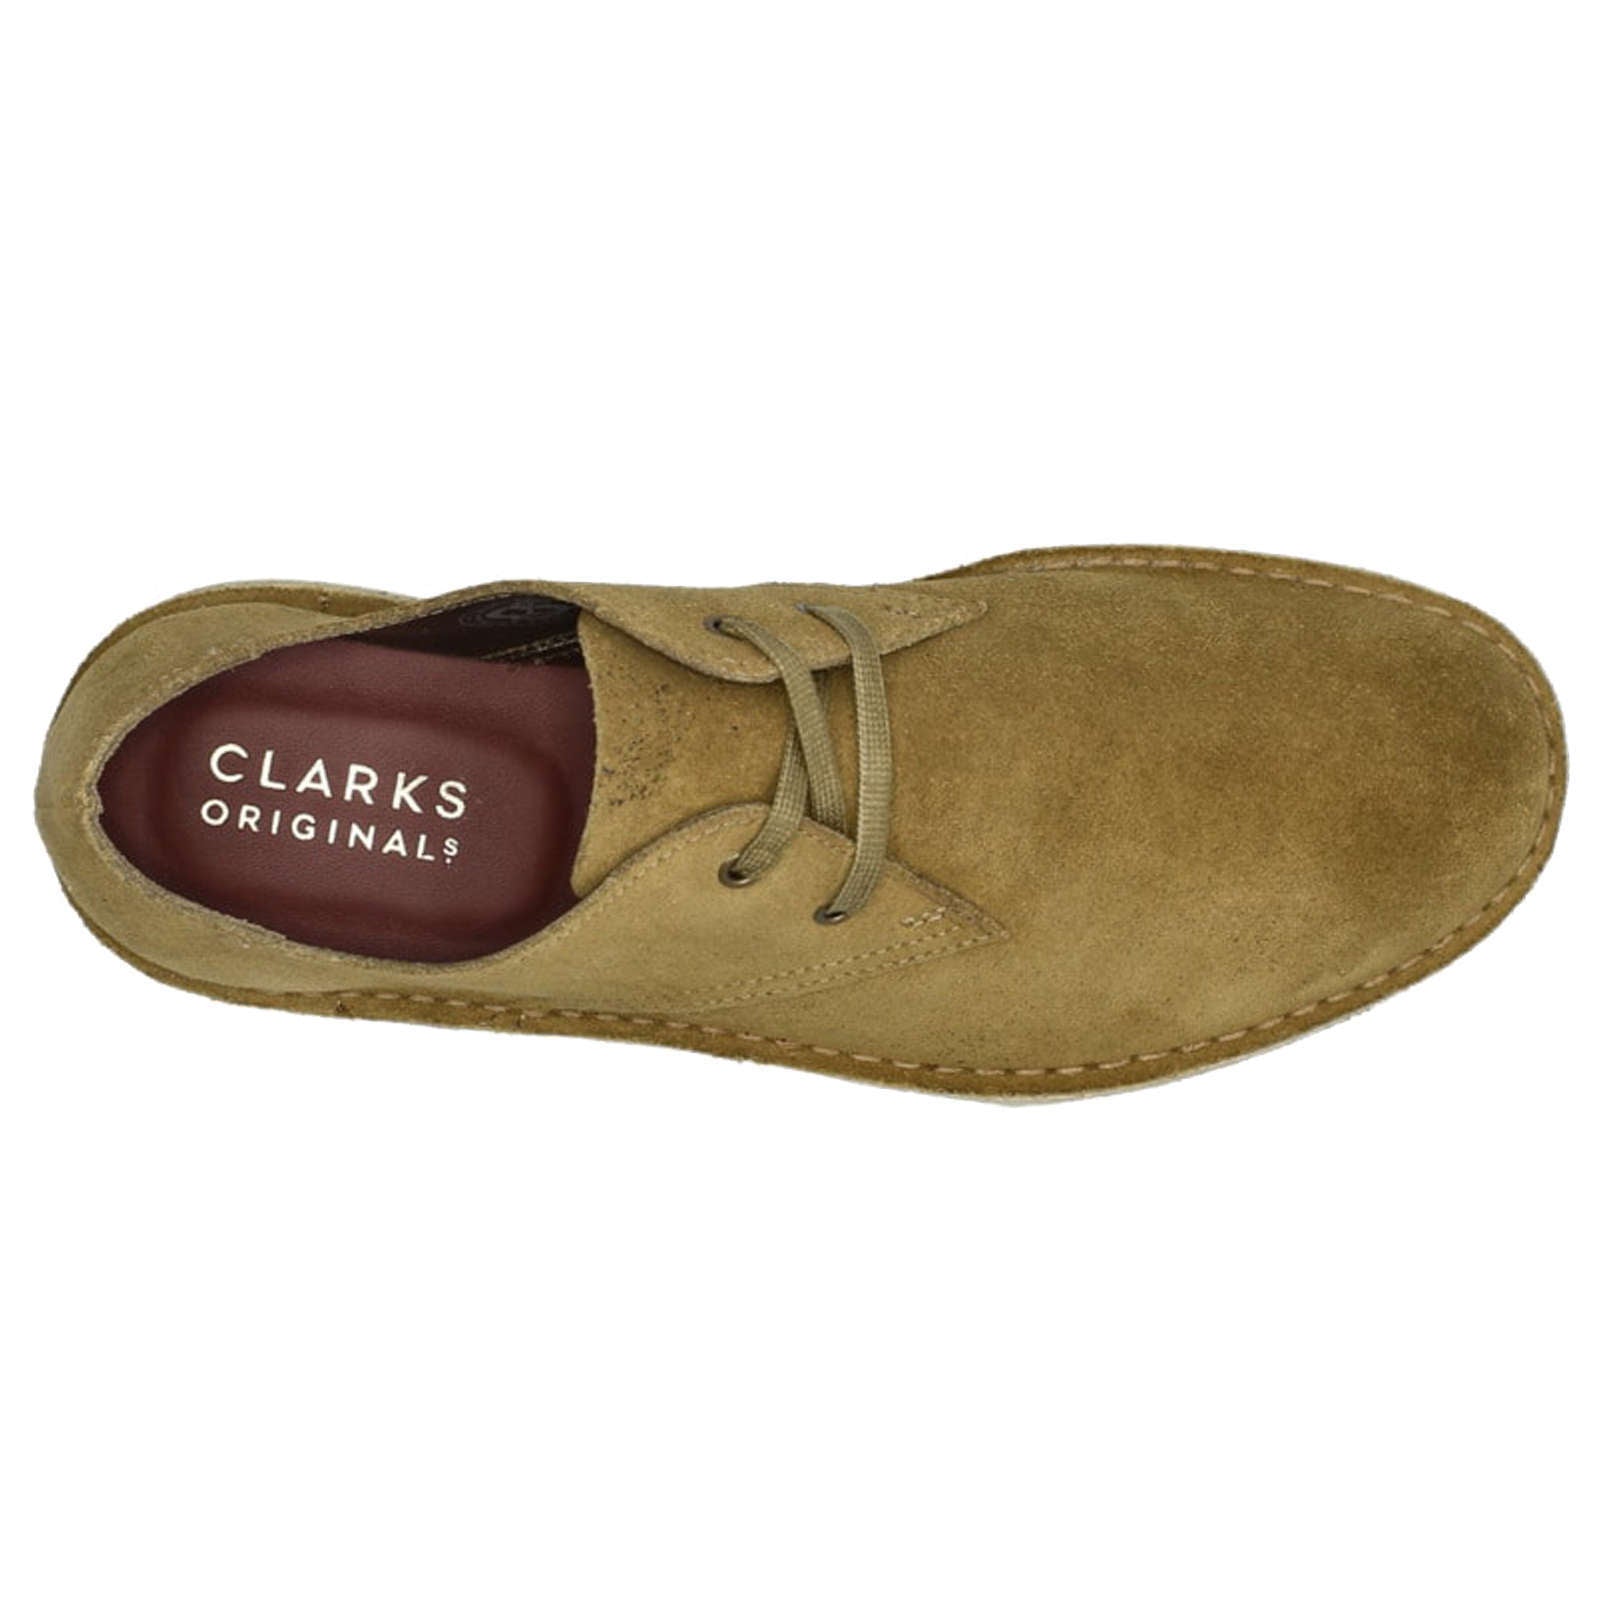 Clarks Originals Desert Khan Suede Leather Men's Shoes#color_dark olive